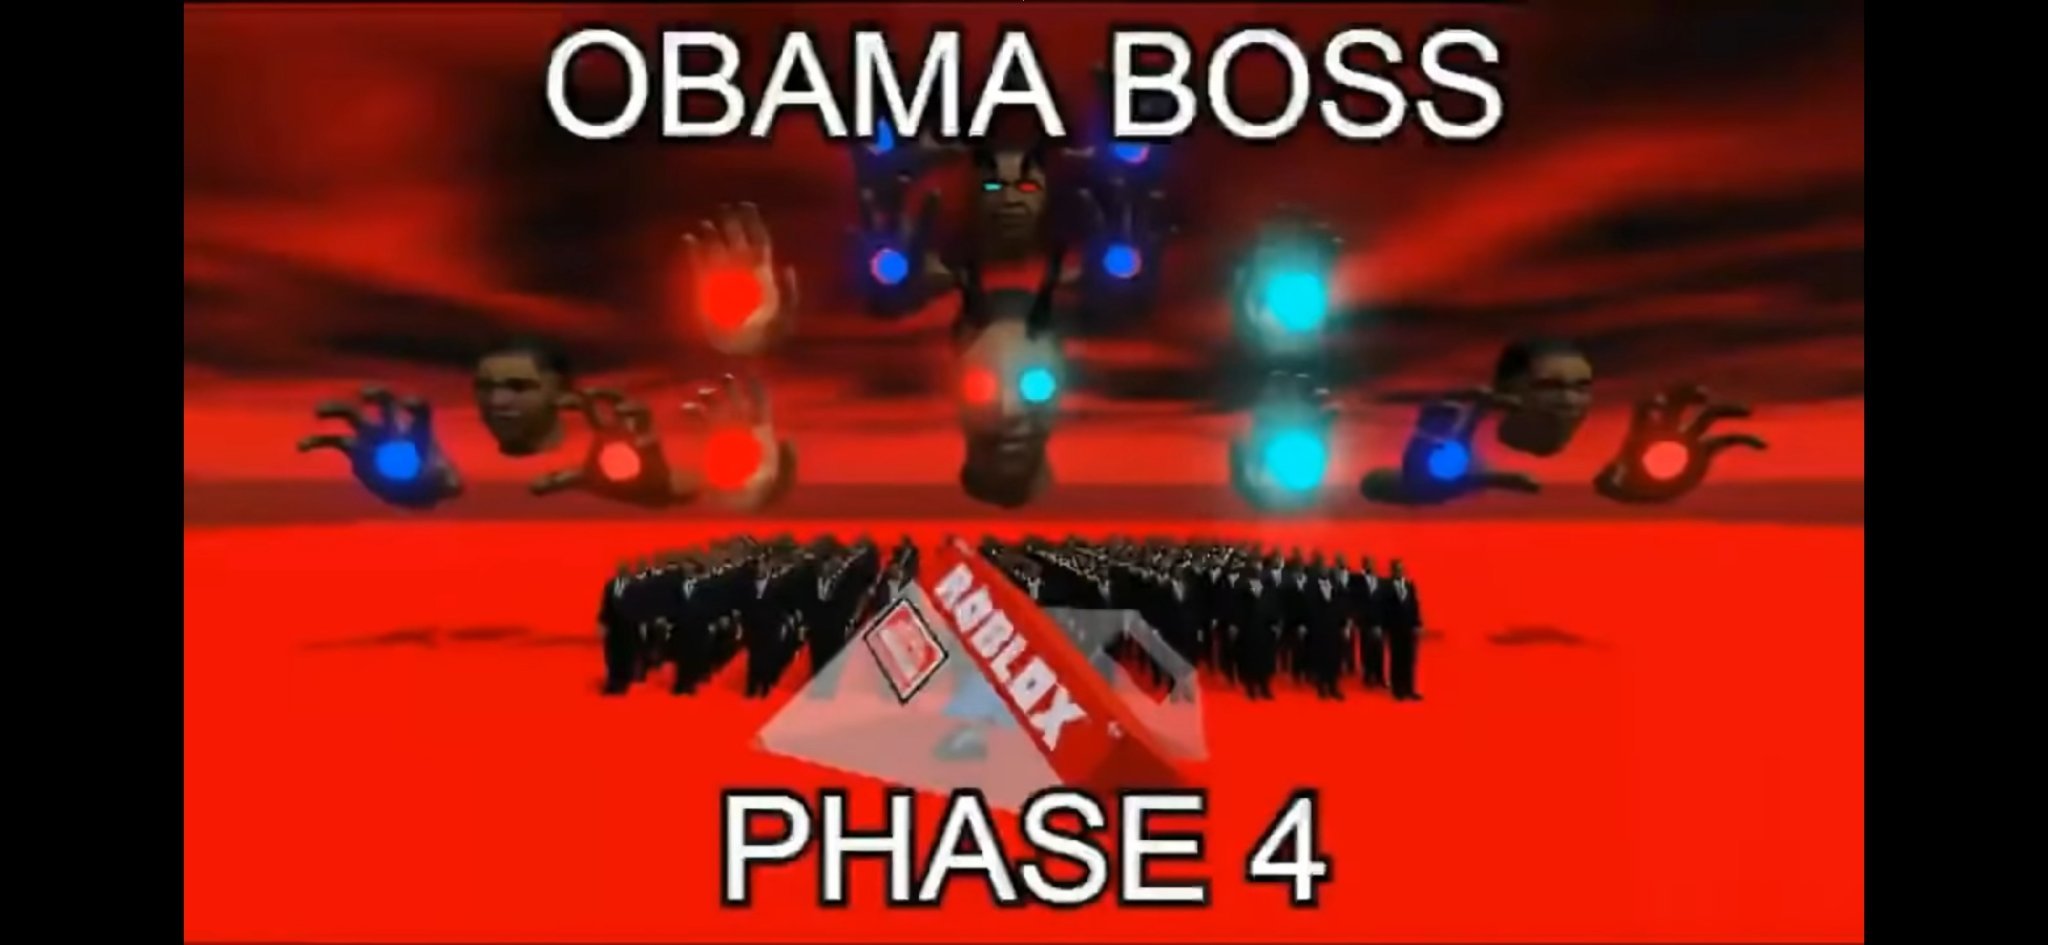 Obama boss phase 4 - meme